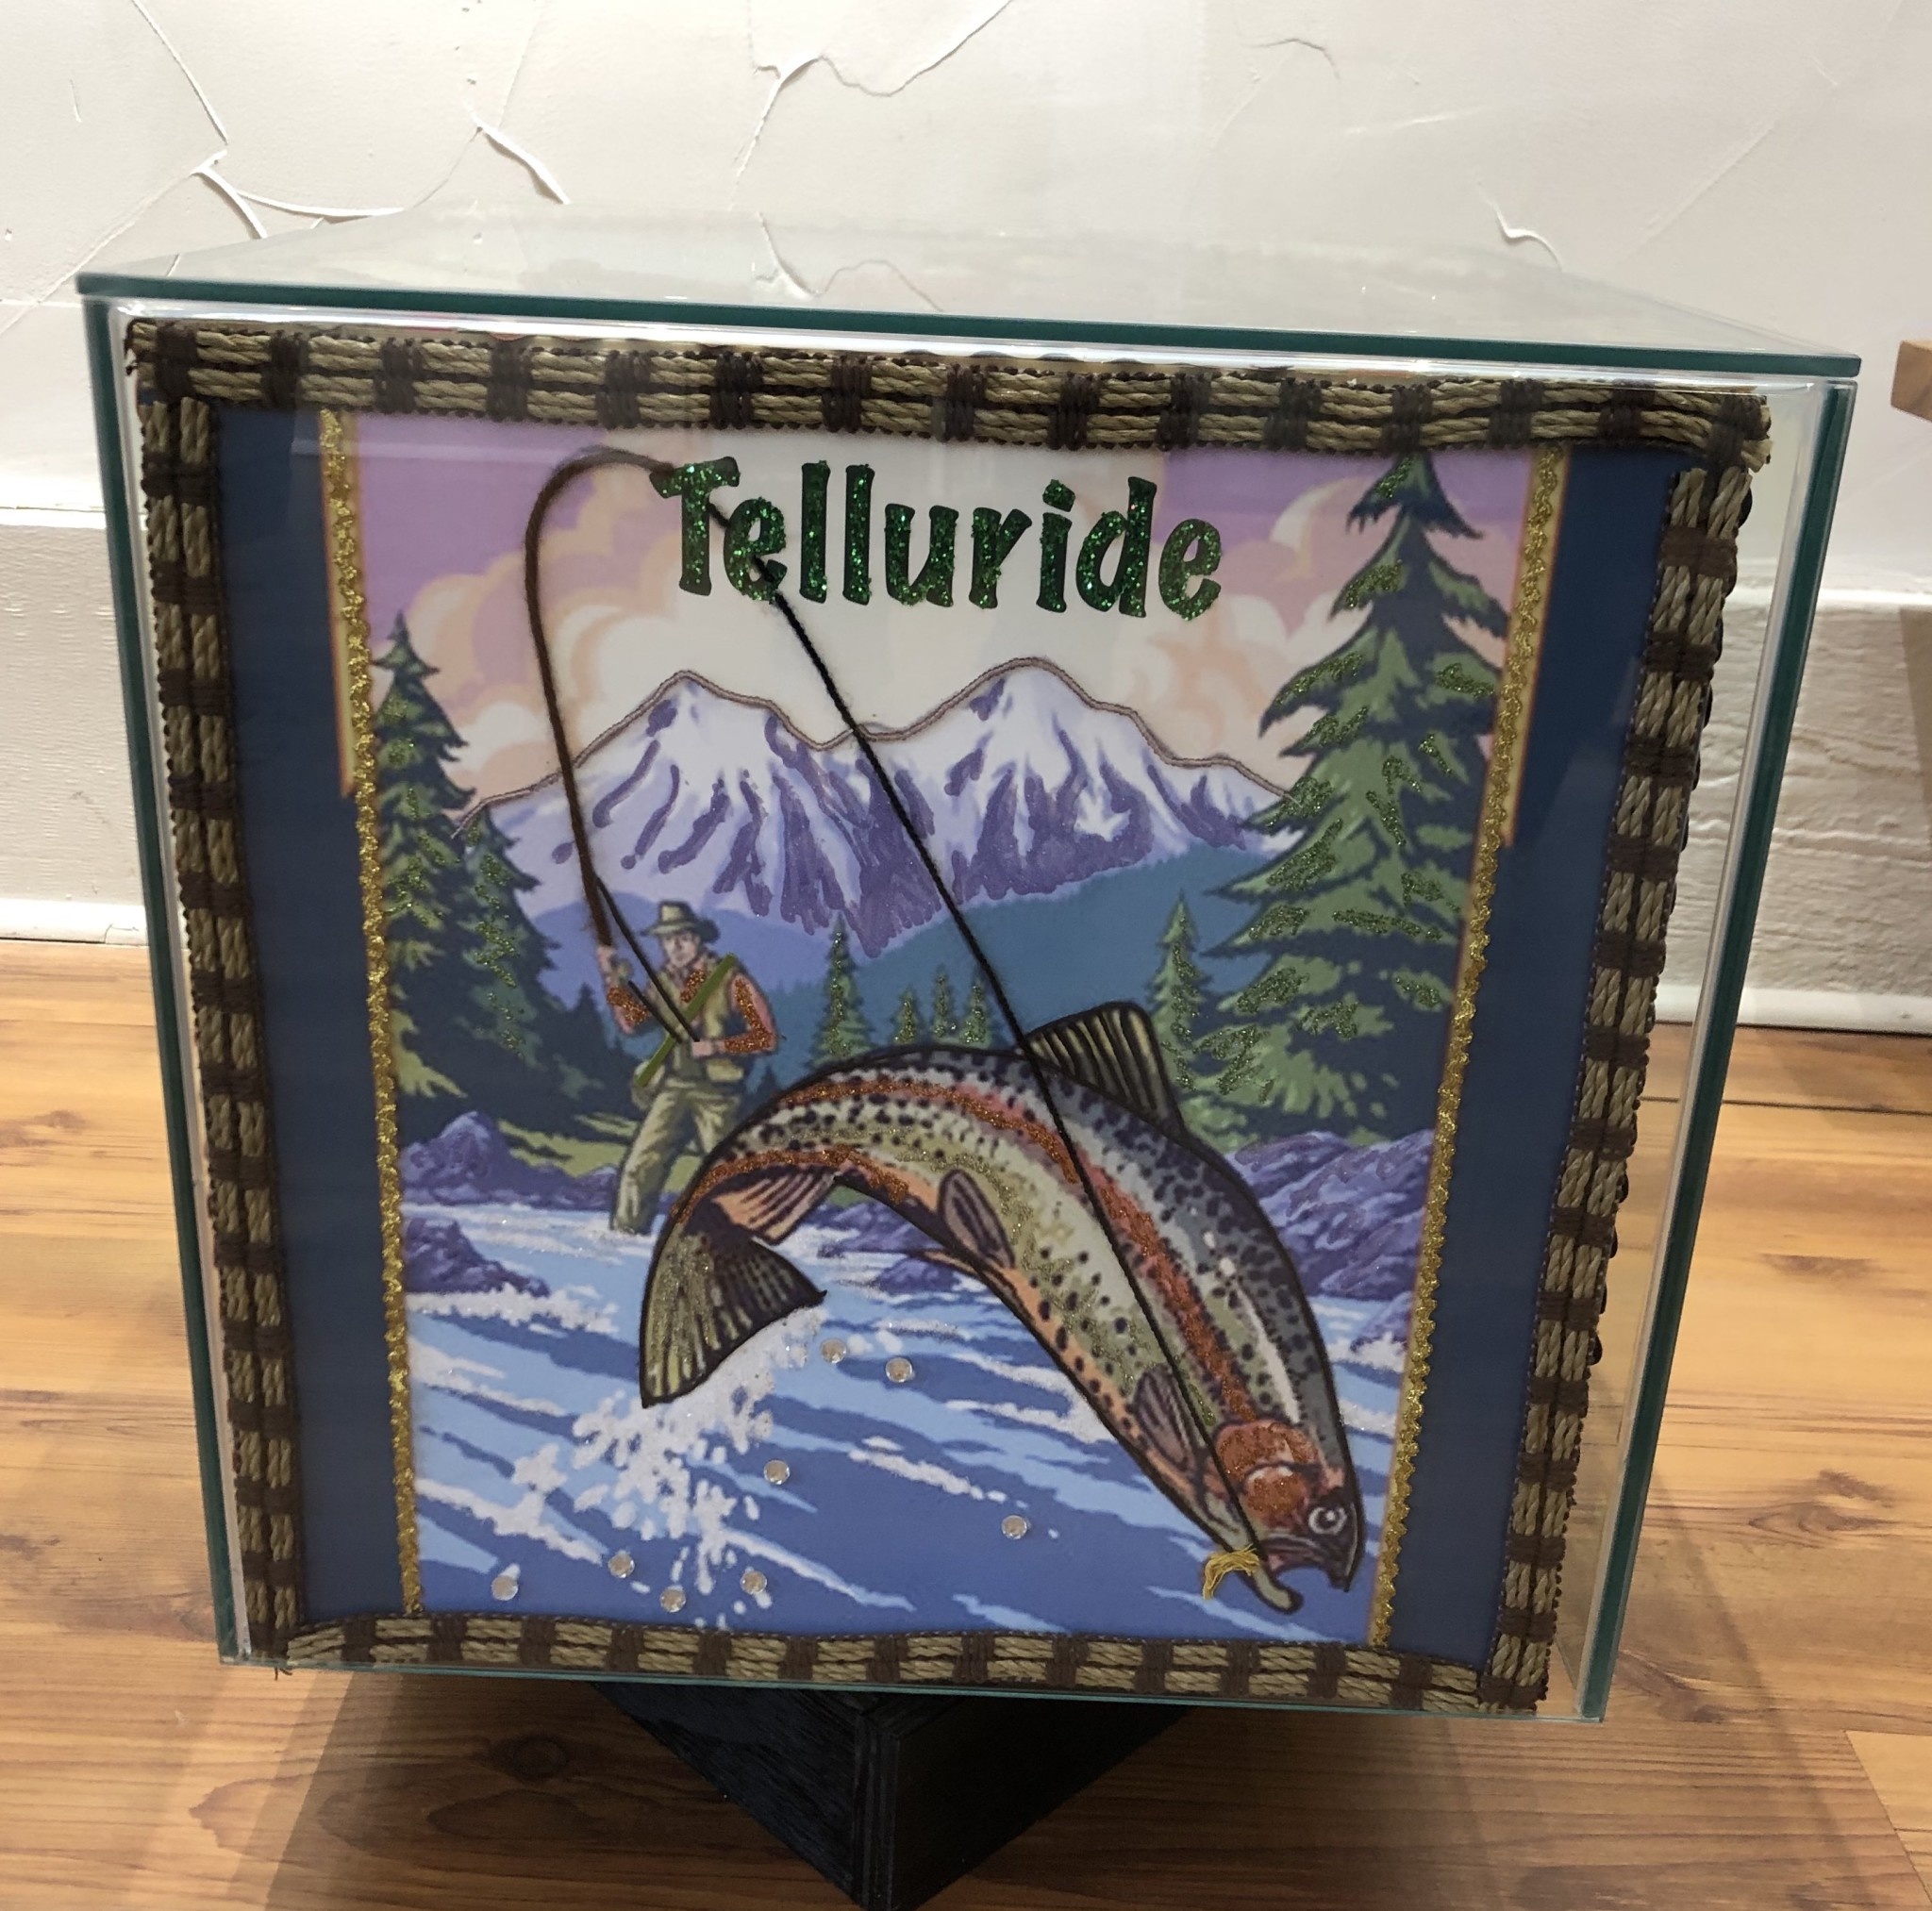 Telluride Summer Table